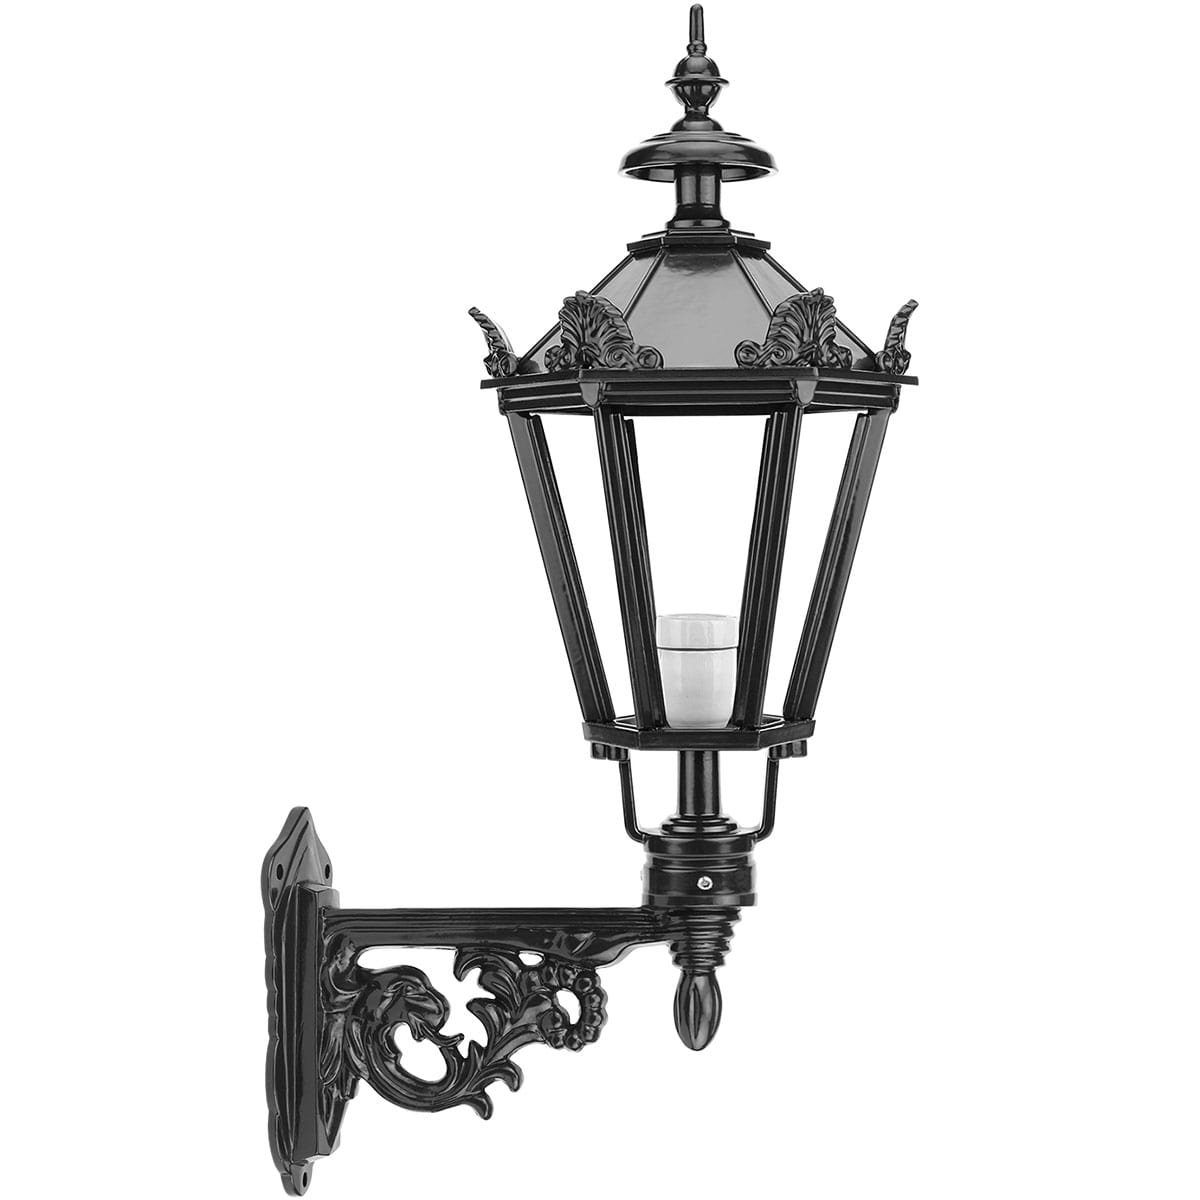 Muurlampje buiten Ellewoutsdijk - 68 cm